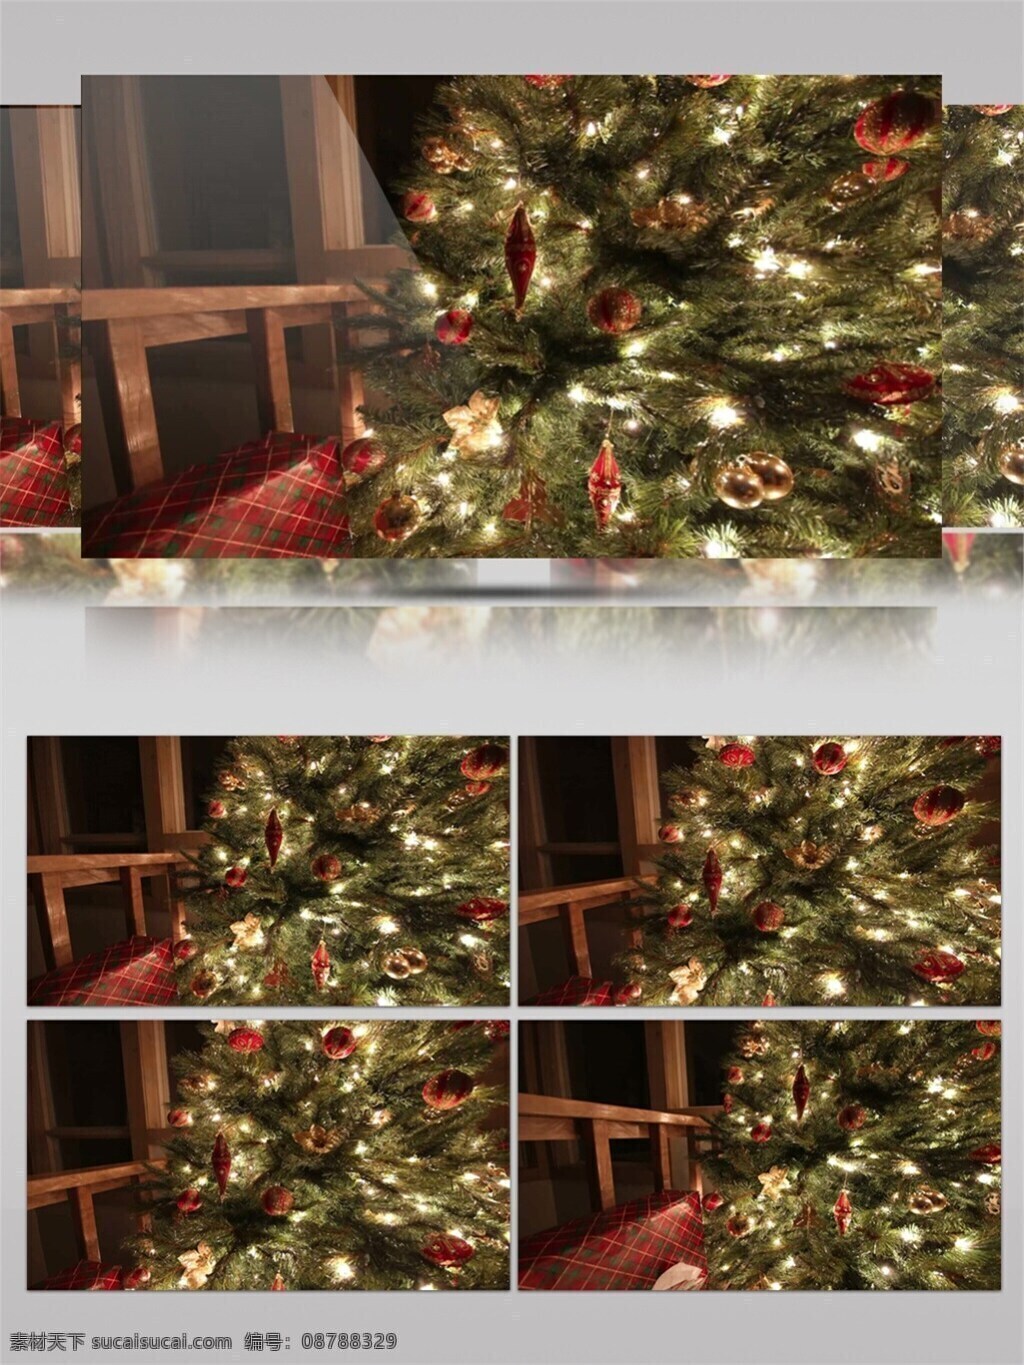 灯光 圣诞树 圣诞节 视频 灯光圣诞树 华丽圣诞树 节日壁纸 节日素材 节日 特效